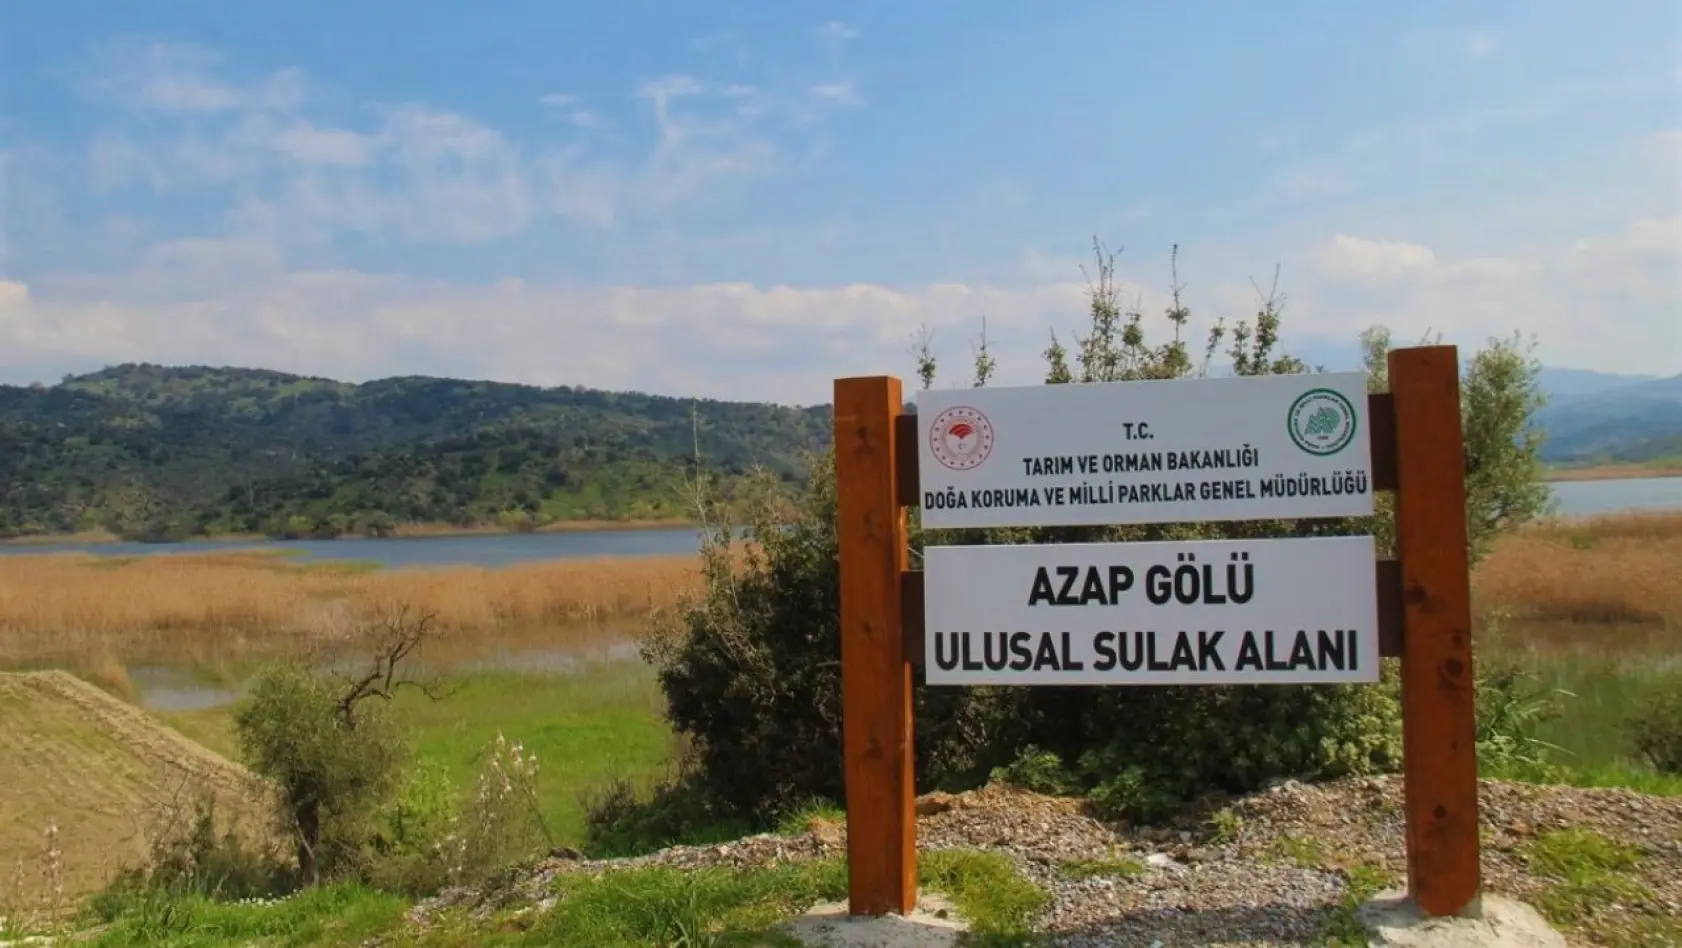 Aydın'da doğaseverler Azap Gölü'ne dikkat çekti